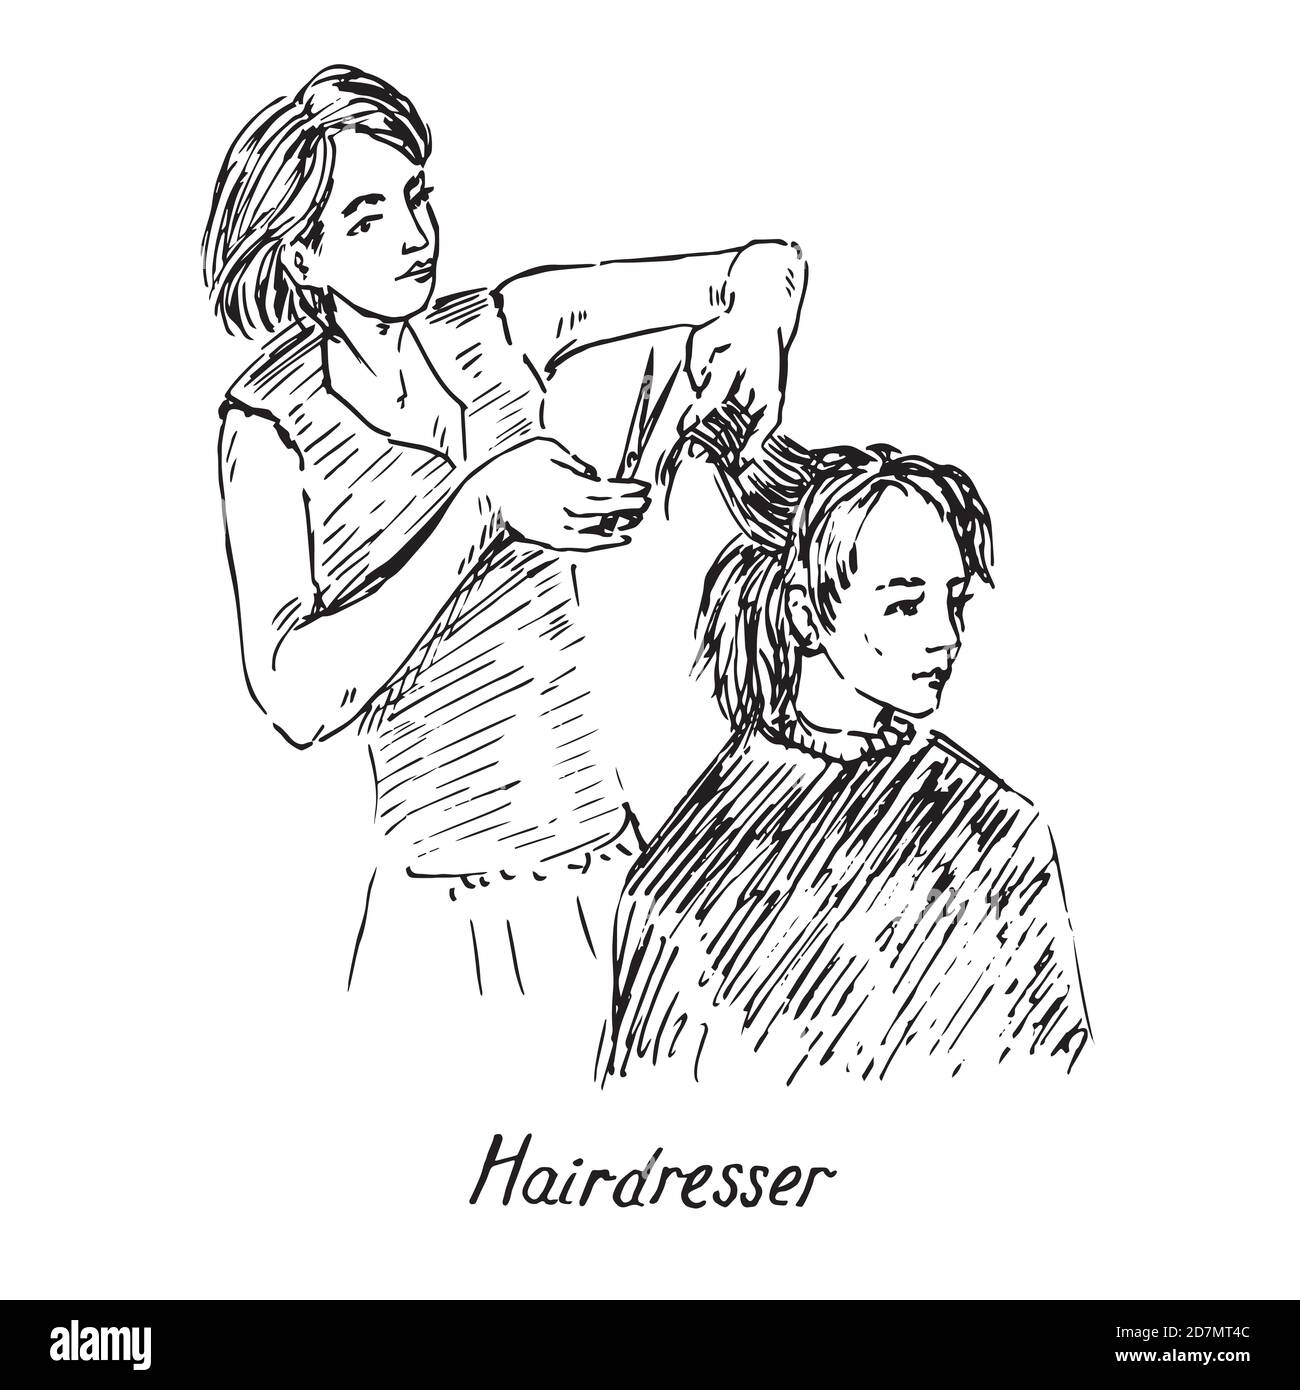 Peluquero en el trabajo, sostenga tijeras y prepárese para cortar el pelo, tallarines dibujados a mano, dibujo, ilustración en blanco y negro Foto de stock